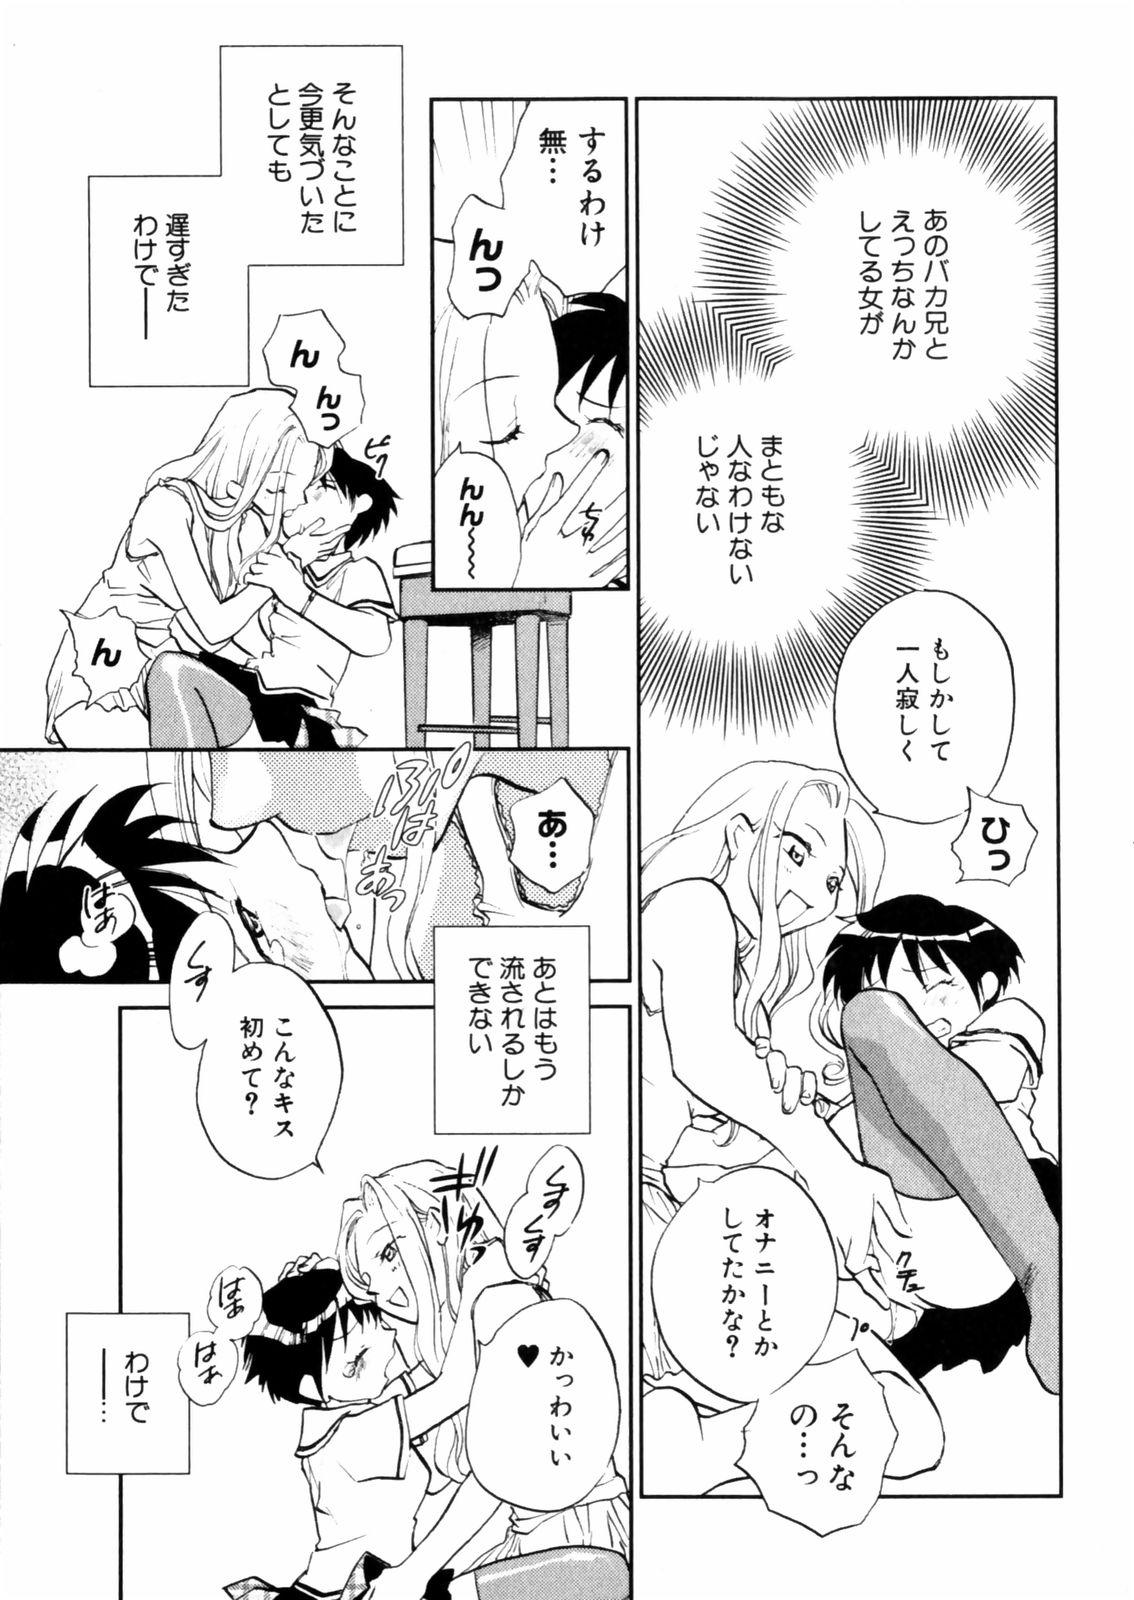 [Okano Ahiru] Hanasake ! Otome Juku (Otome Private Tutoring School) Vol.2 146